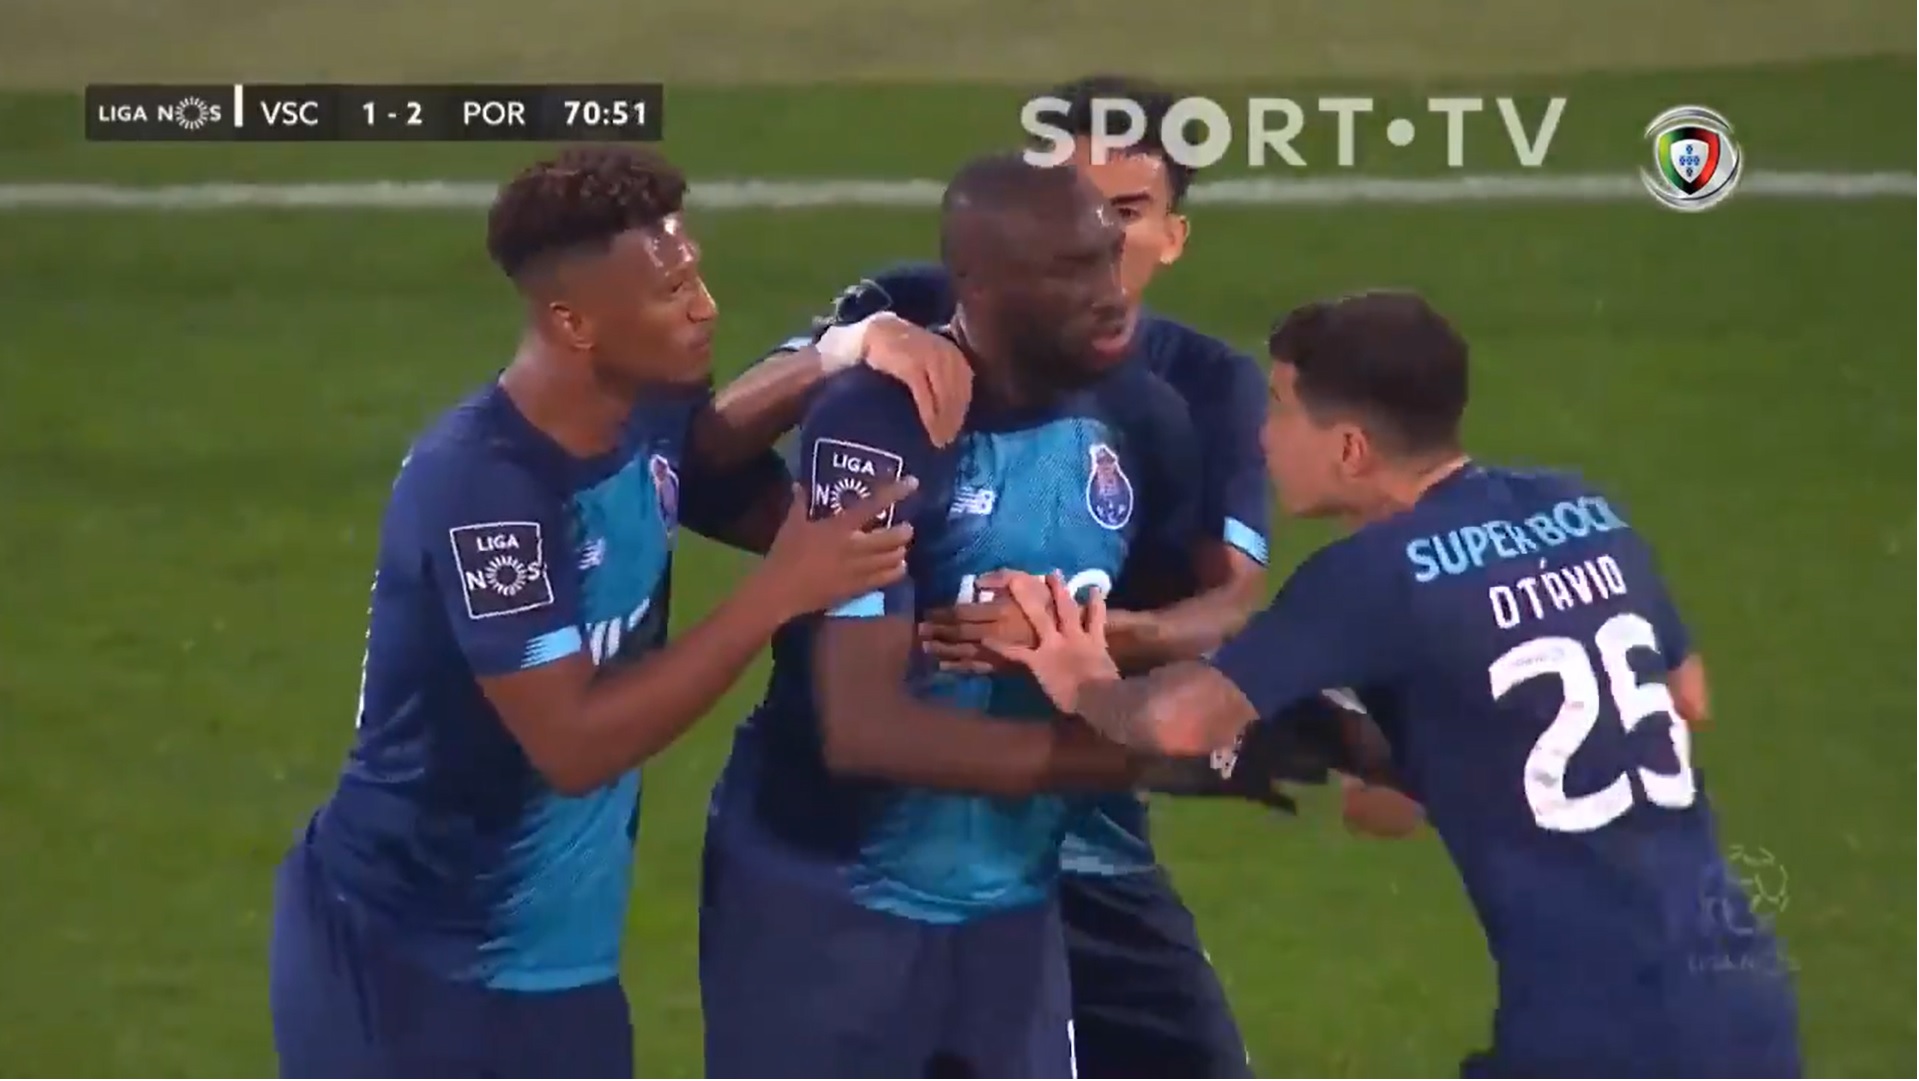 Rasszista bekiabálások miatt levonult a Porto gólt szerző játékosa, a csapattársai nem álltak ki mellette